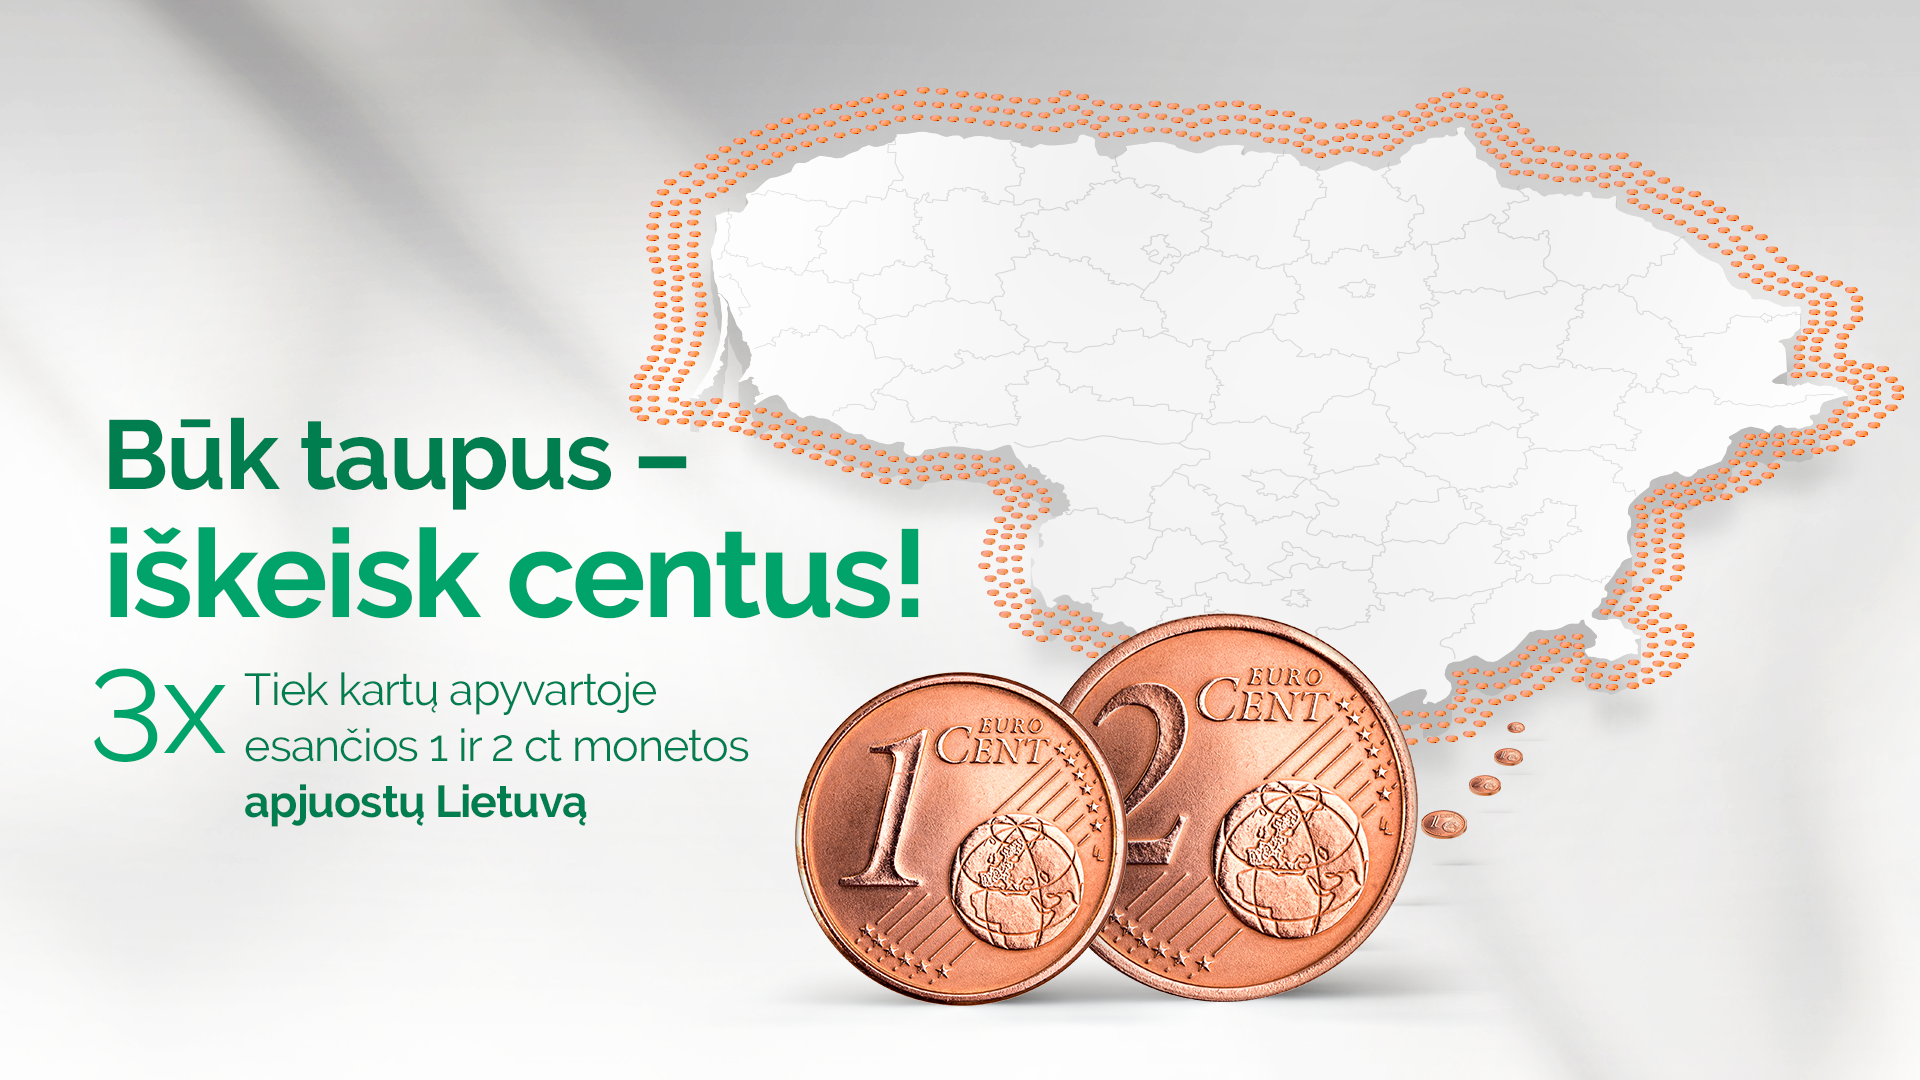 Lietuvos bankas kviečia: būk taupus – iškeisk centus!